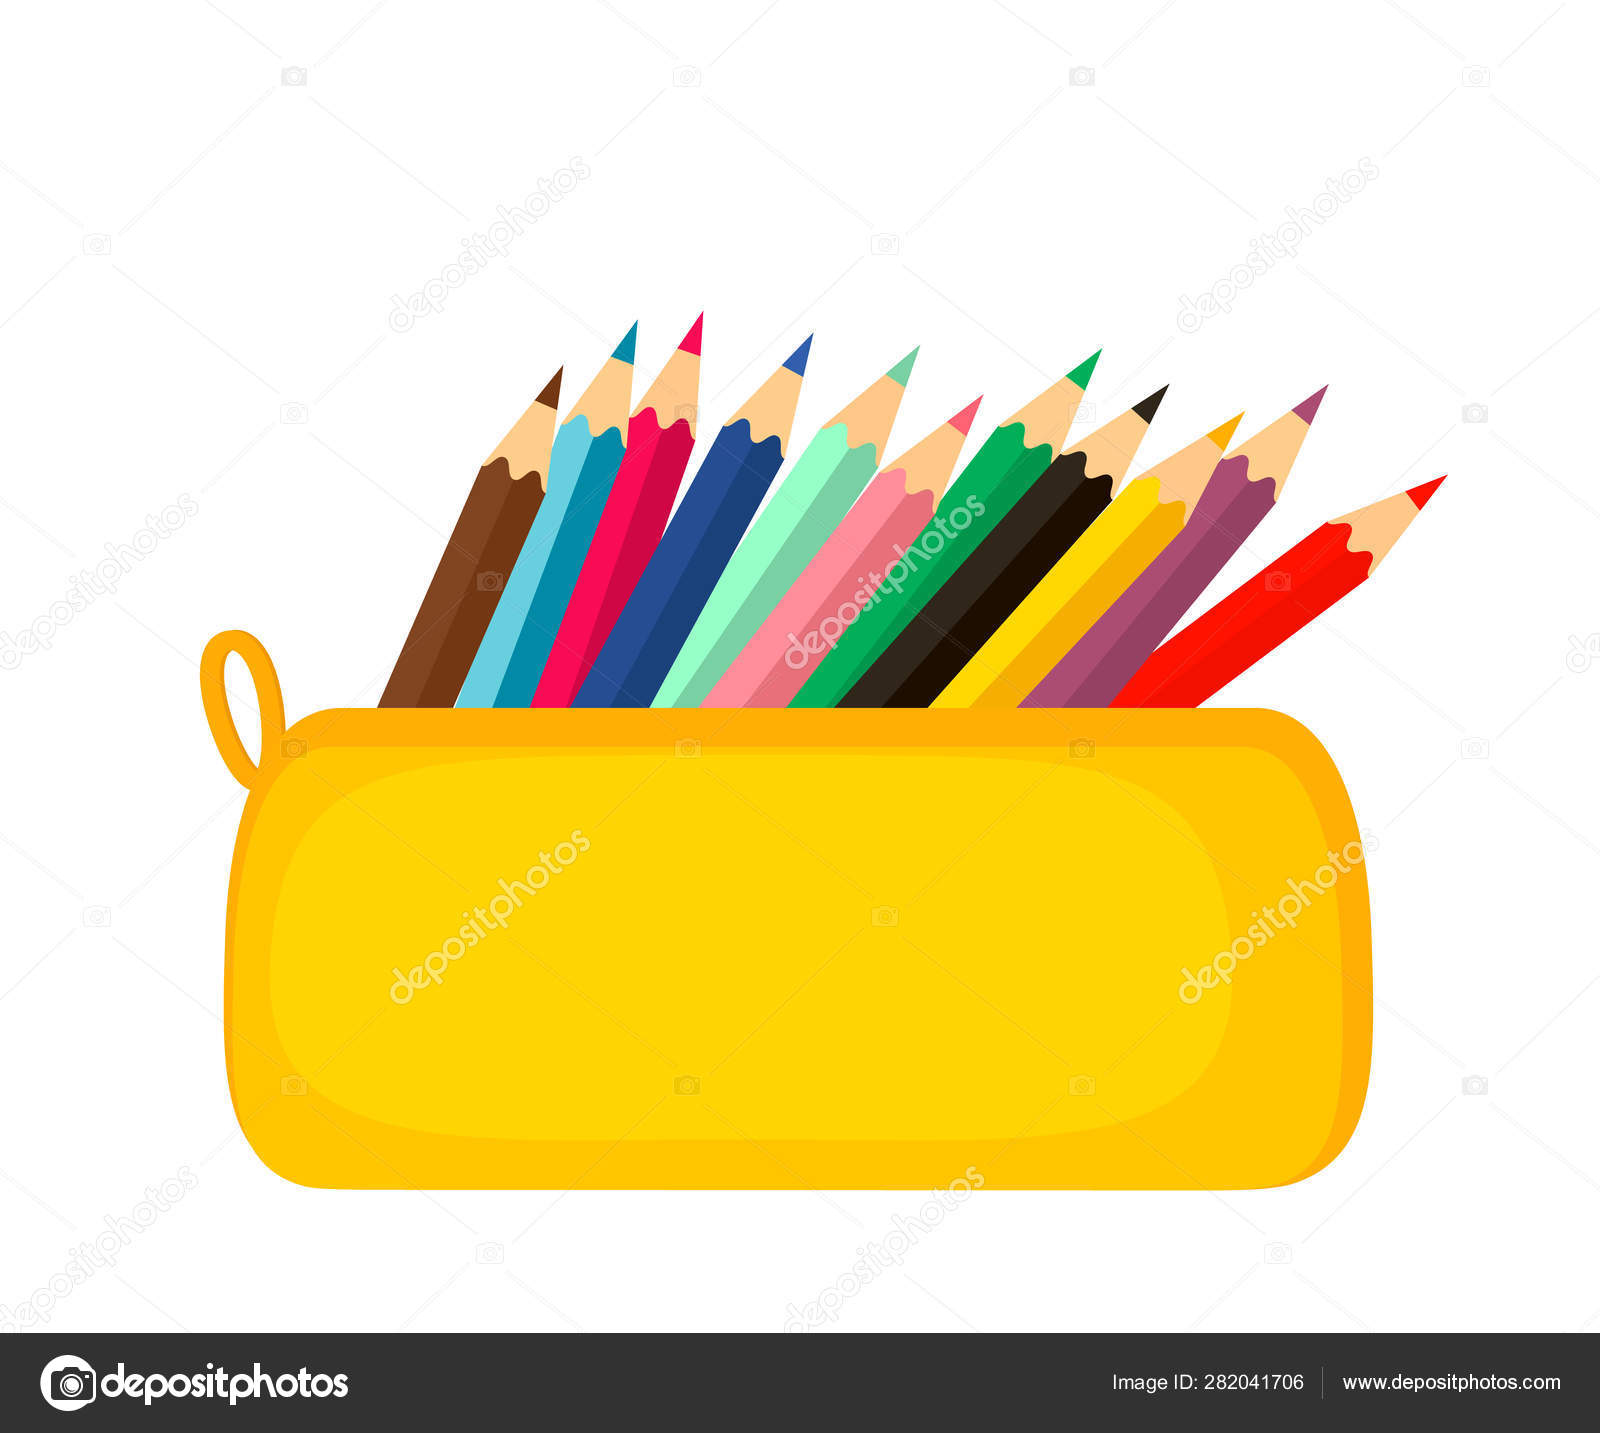 https://st4.depositphotos.com/8741420/28204/v/1600/depositphotos_282041706-stock-illustration-a-bright-school-pencil-case.jpg